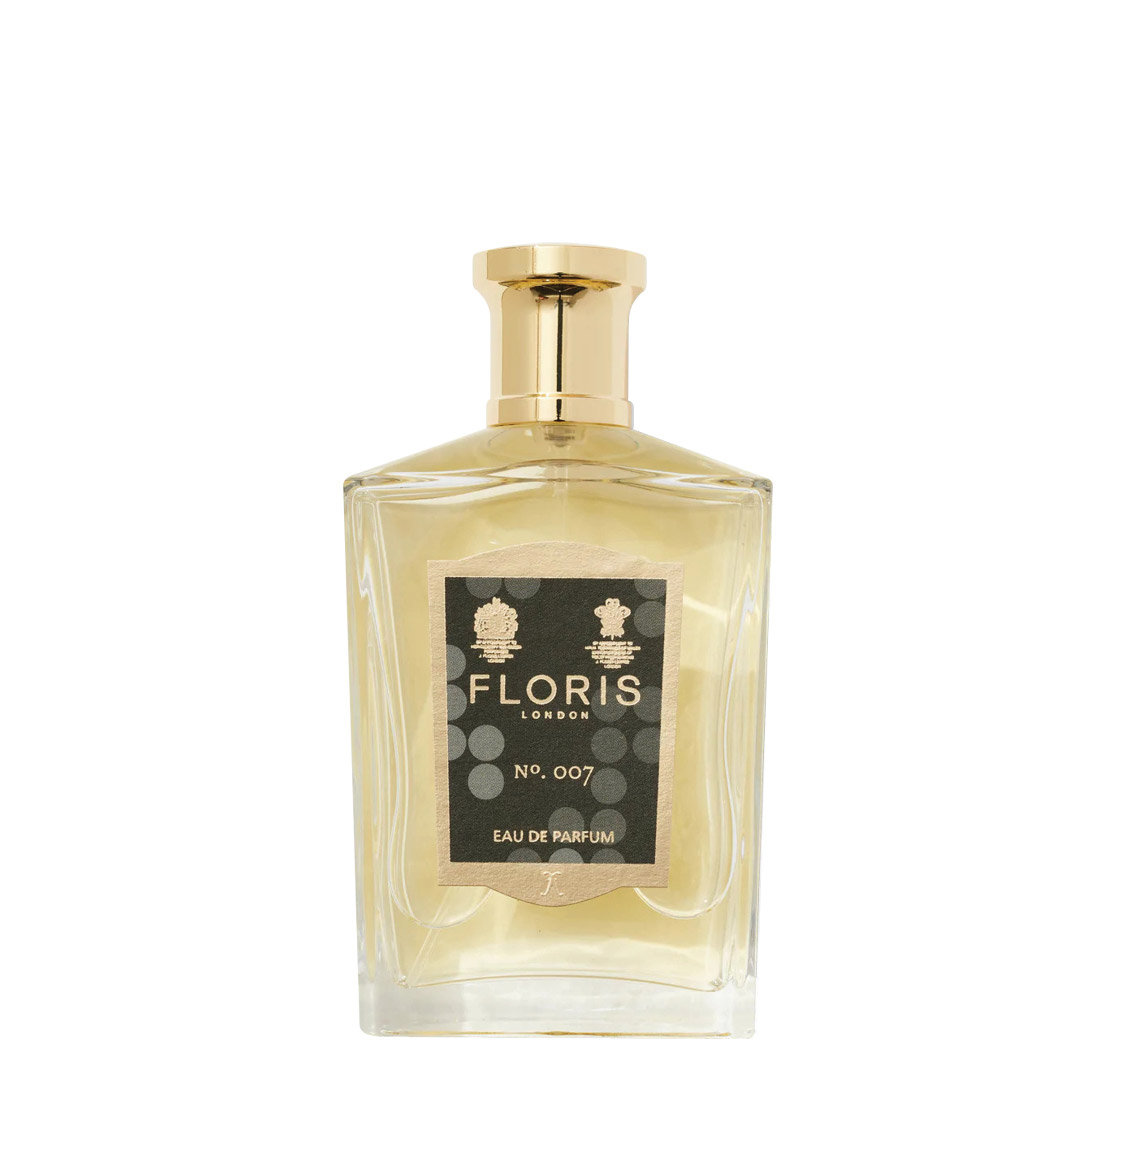 Floris London No.007 Eau De Parfum 100ml